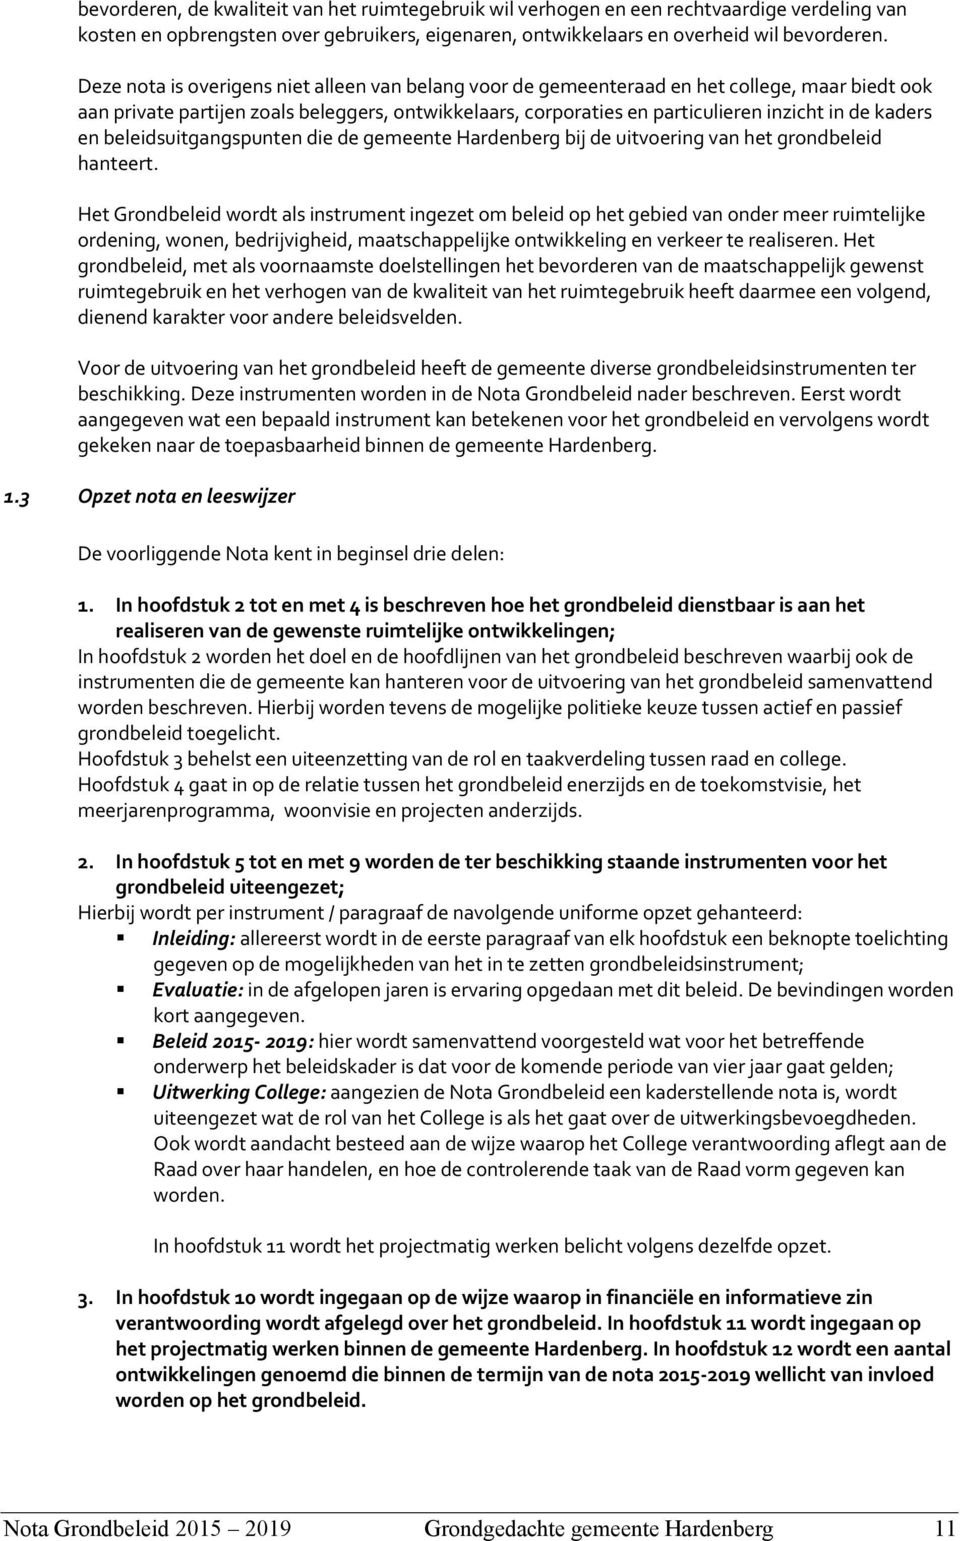 kaders en beleidsuitgangspunten die de gemeente Hardenberg bij de uitvoering van het grondbeleid hanteert.